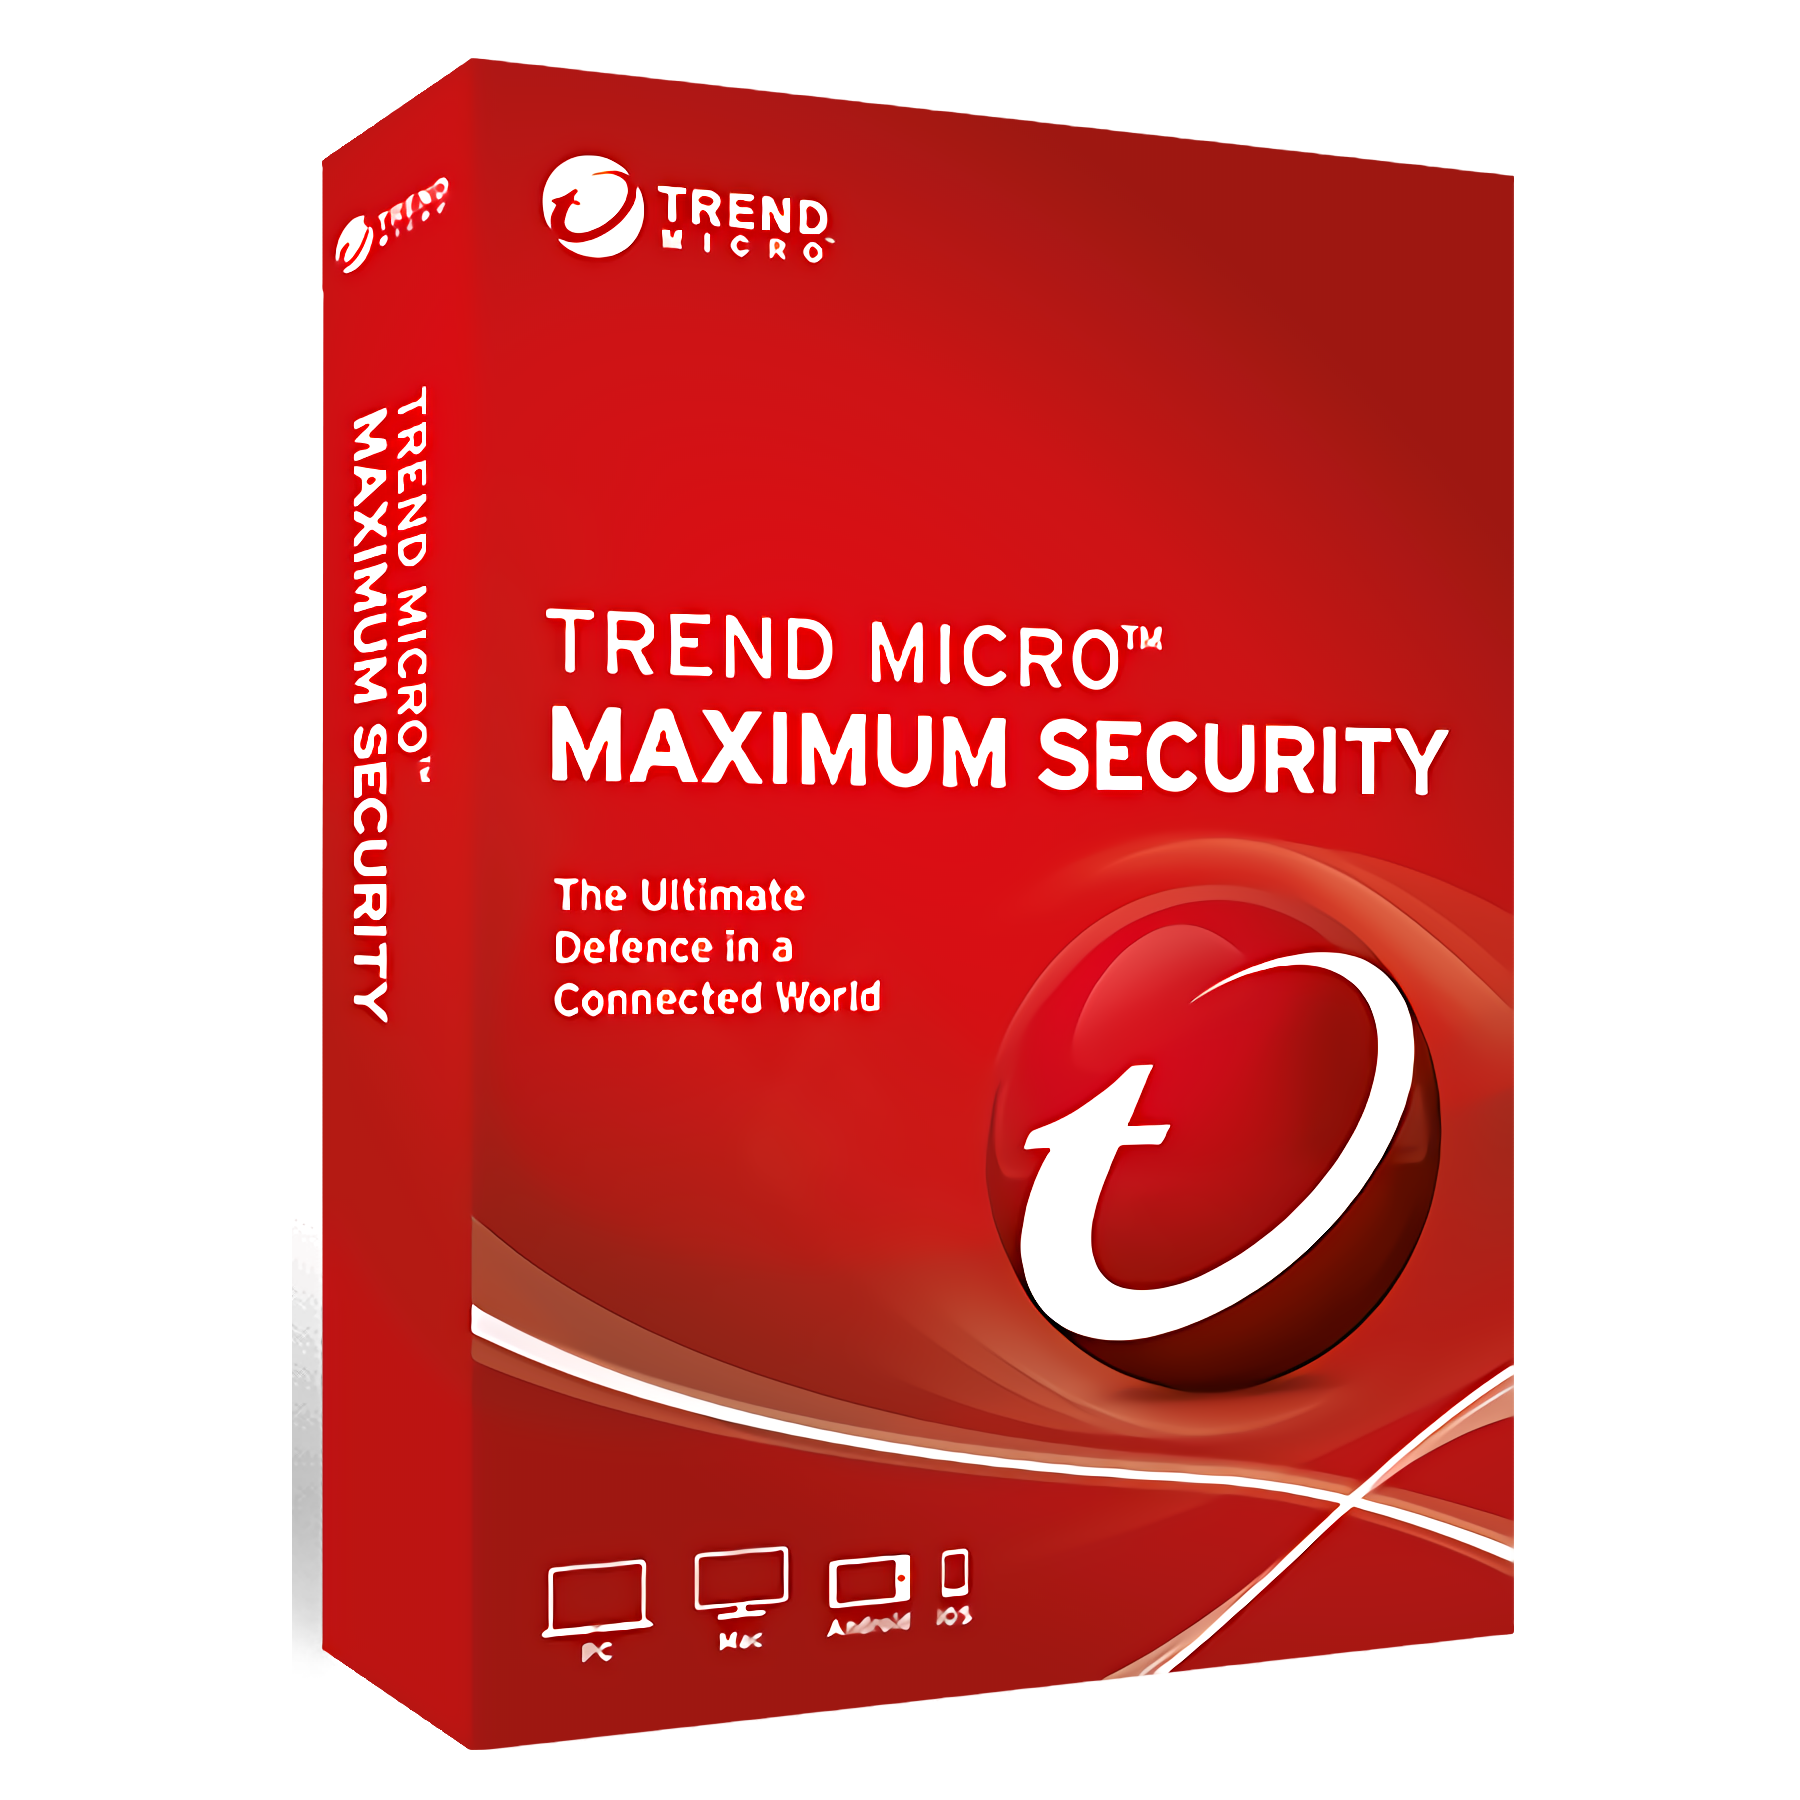 Trend micro maximum security download